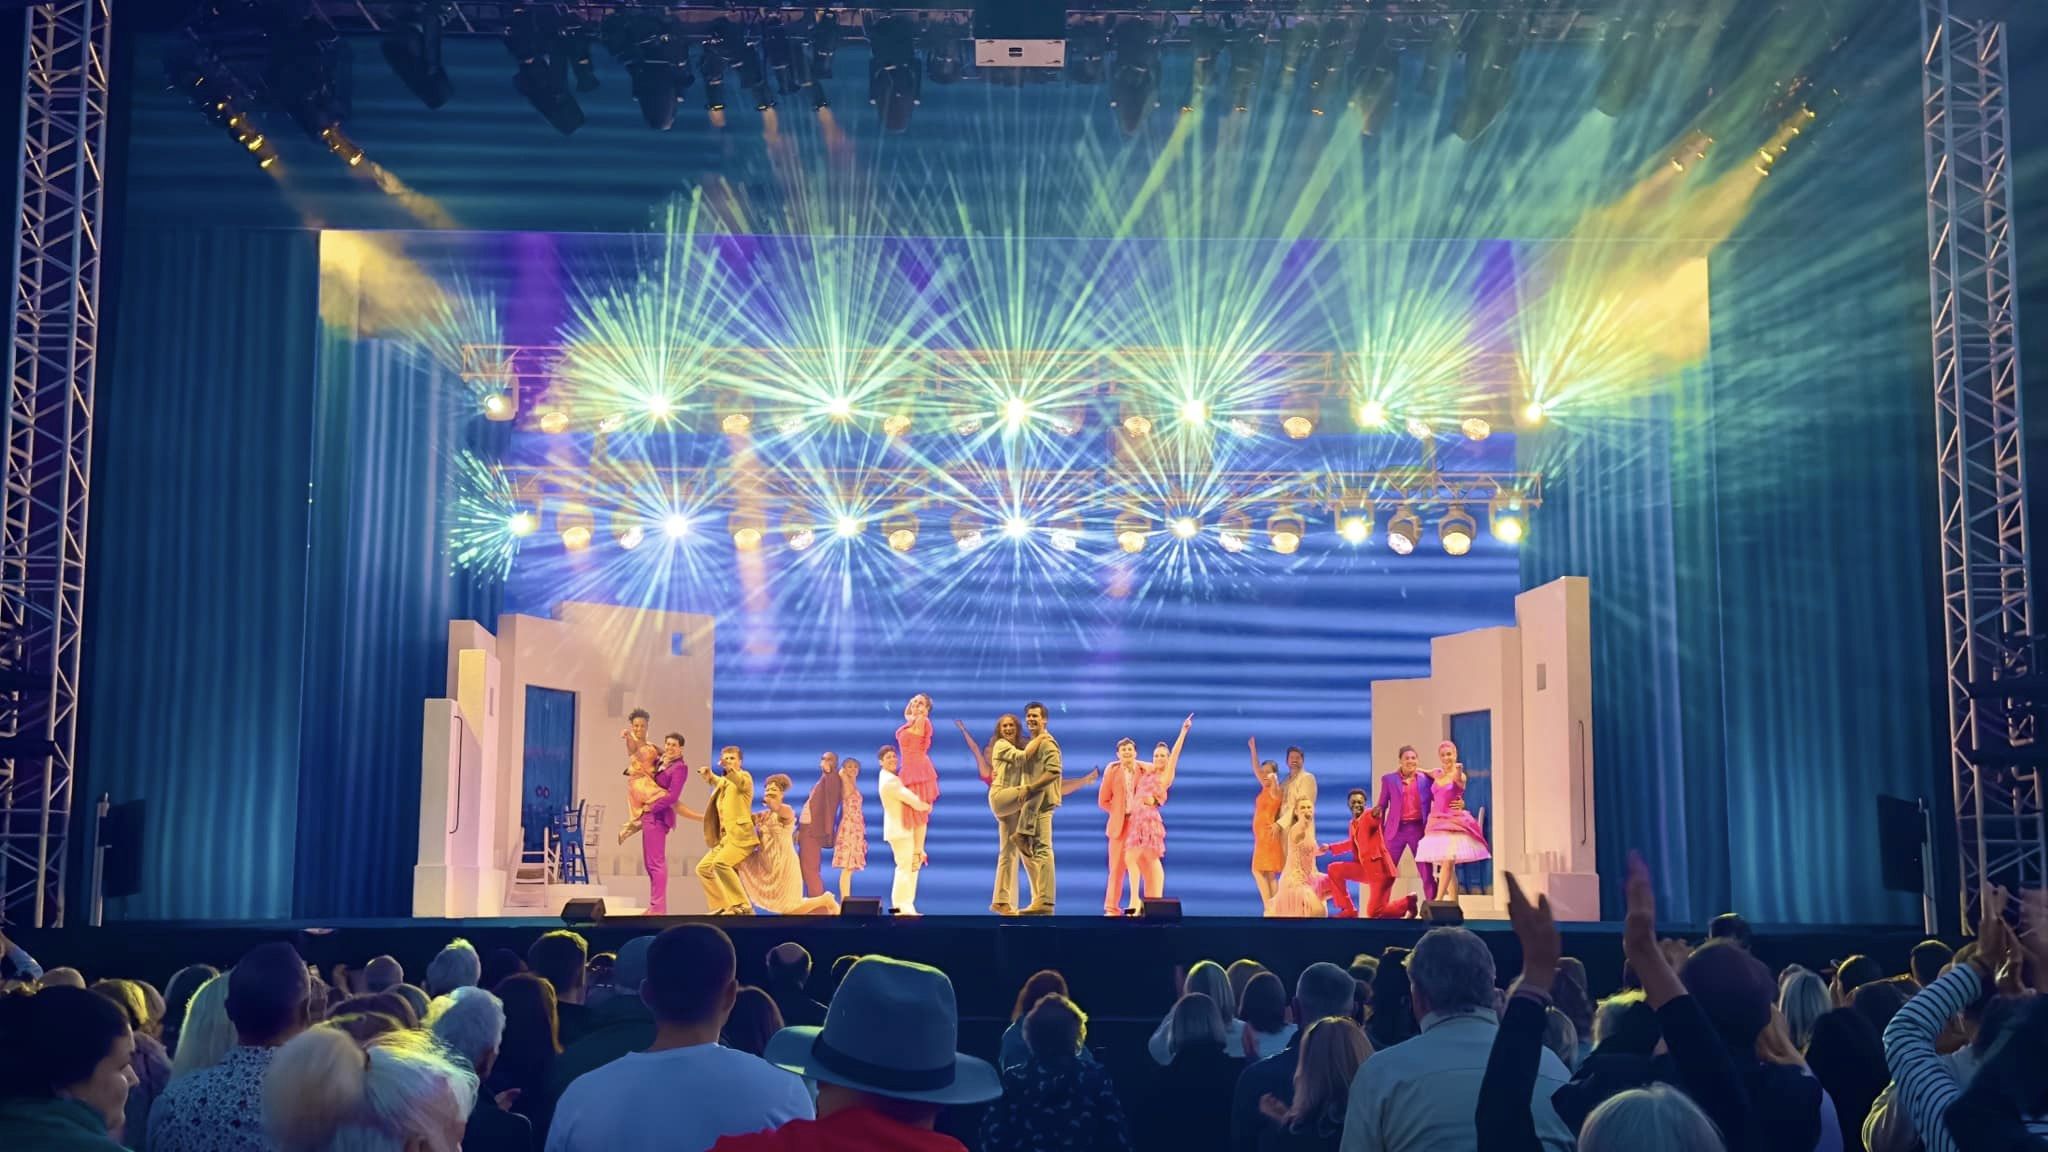 Team PRG UK is trots om de wereldwijd geliefde Musical "Mamma Mia" aan het publiek te mogen leveren!